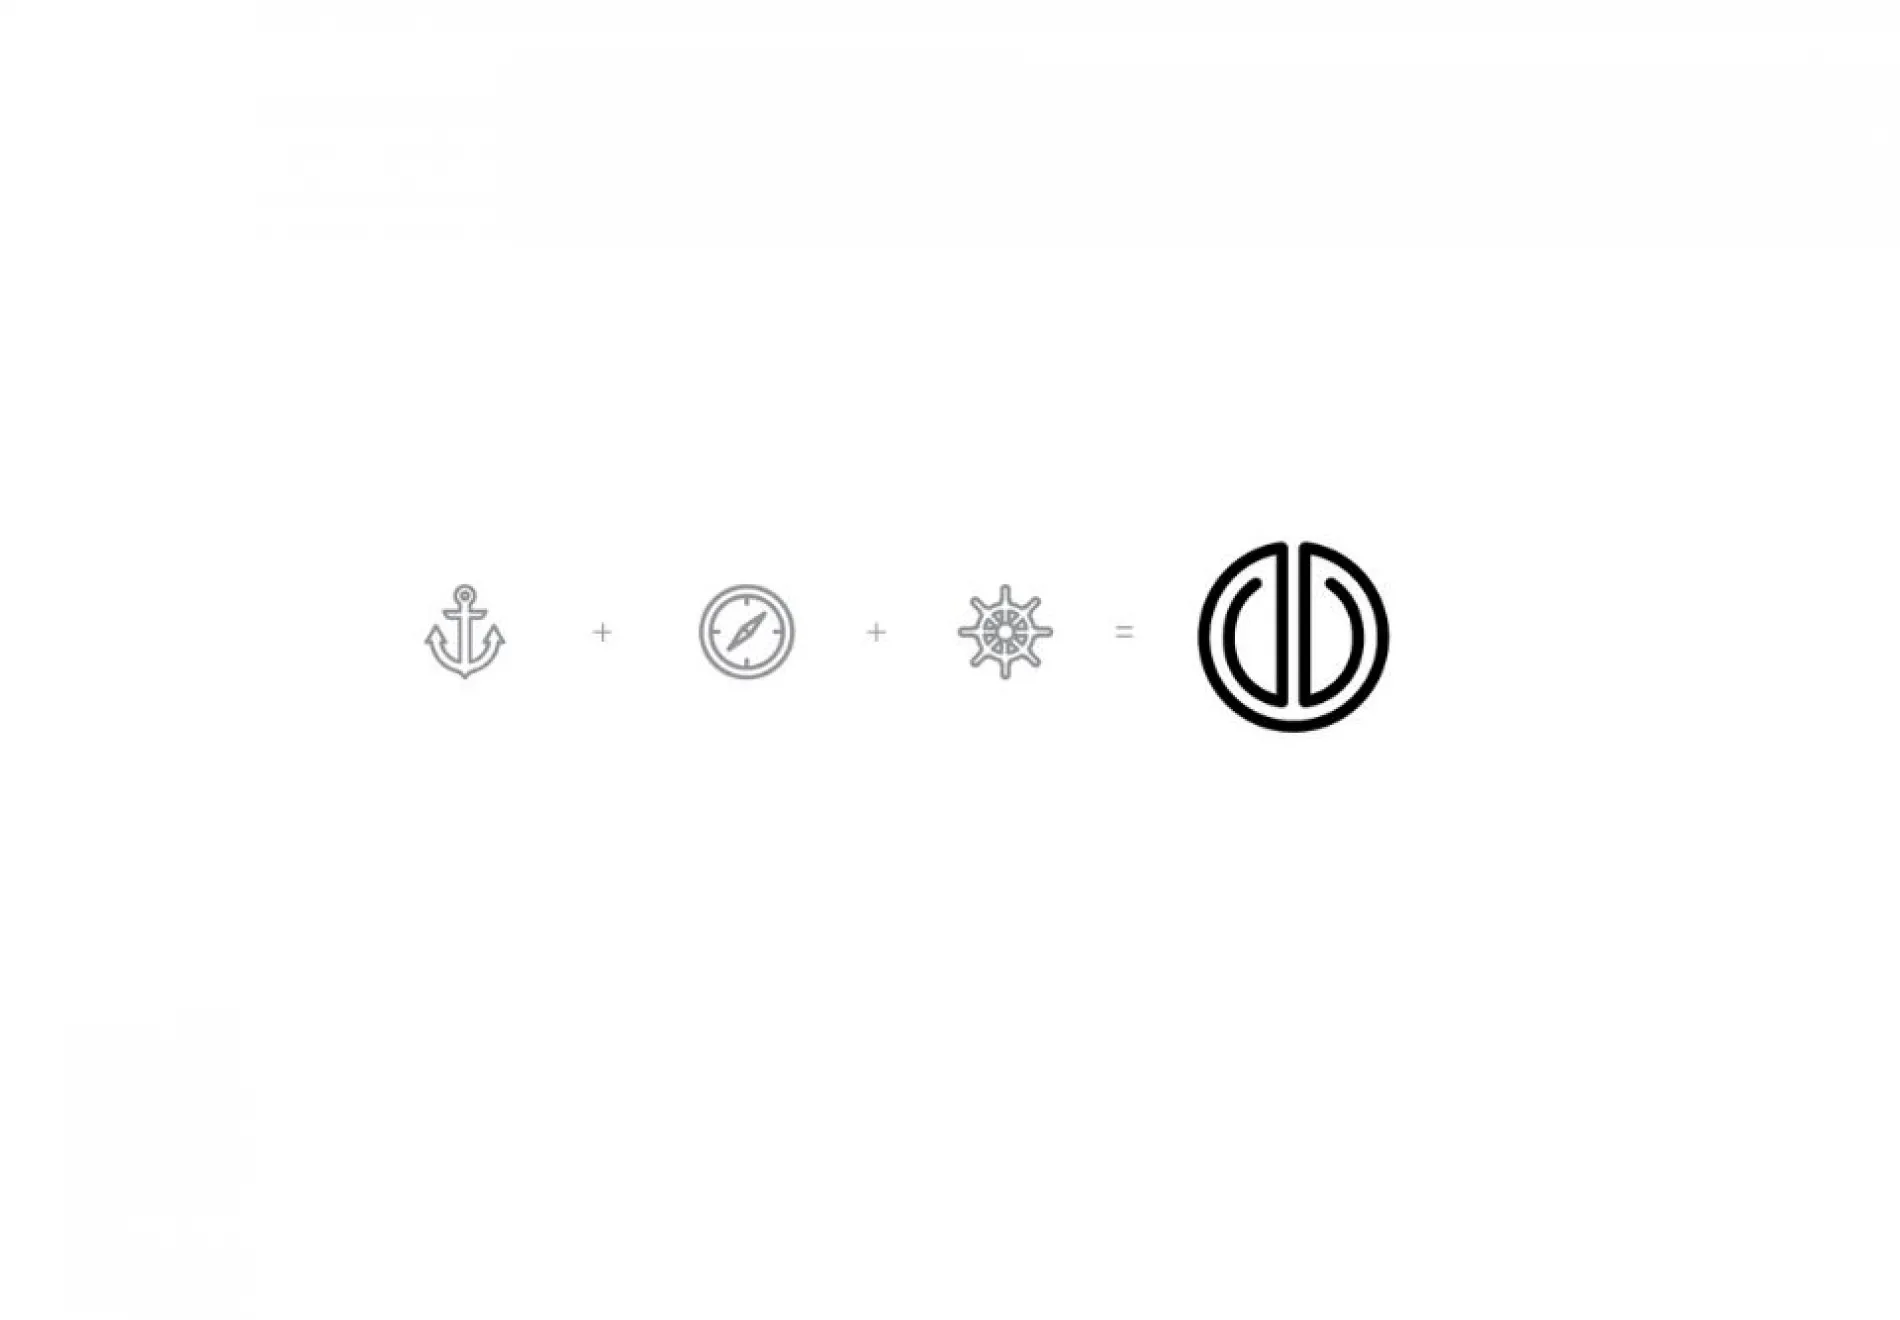 Symbol behind logo